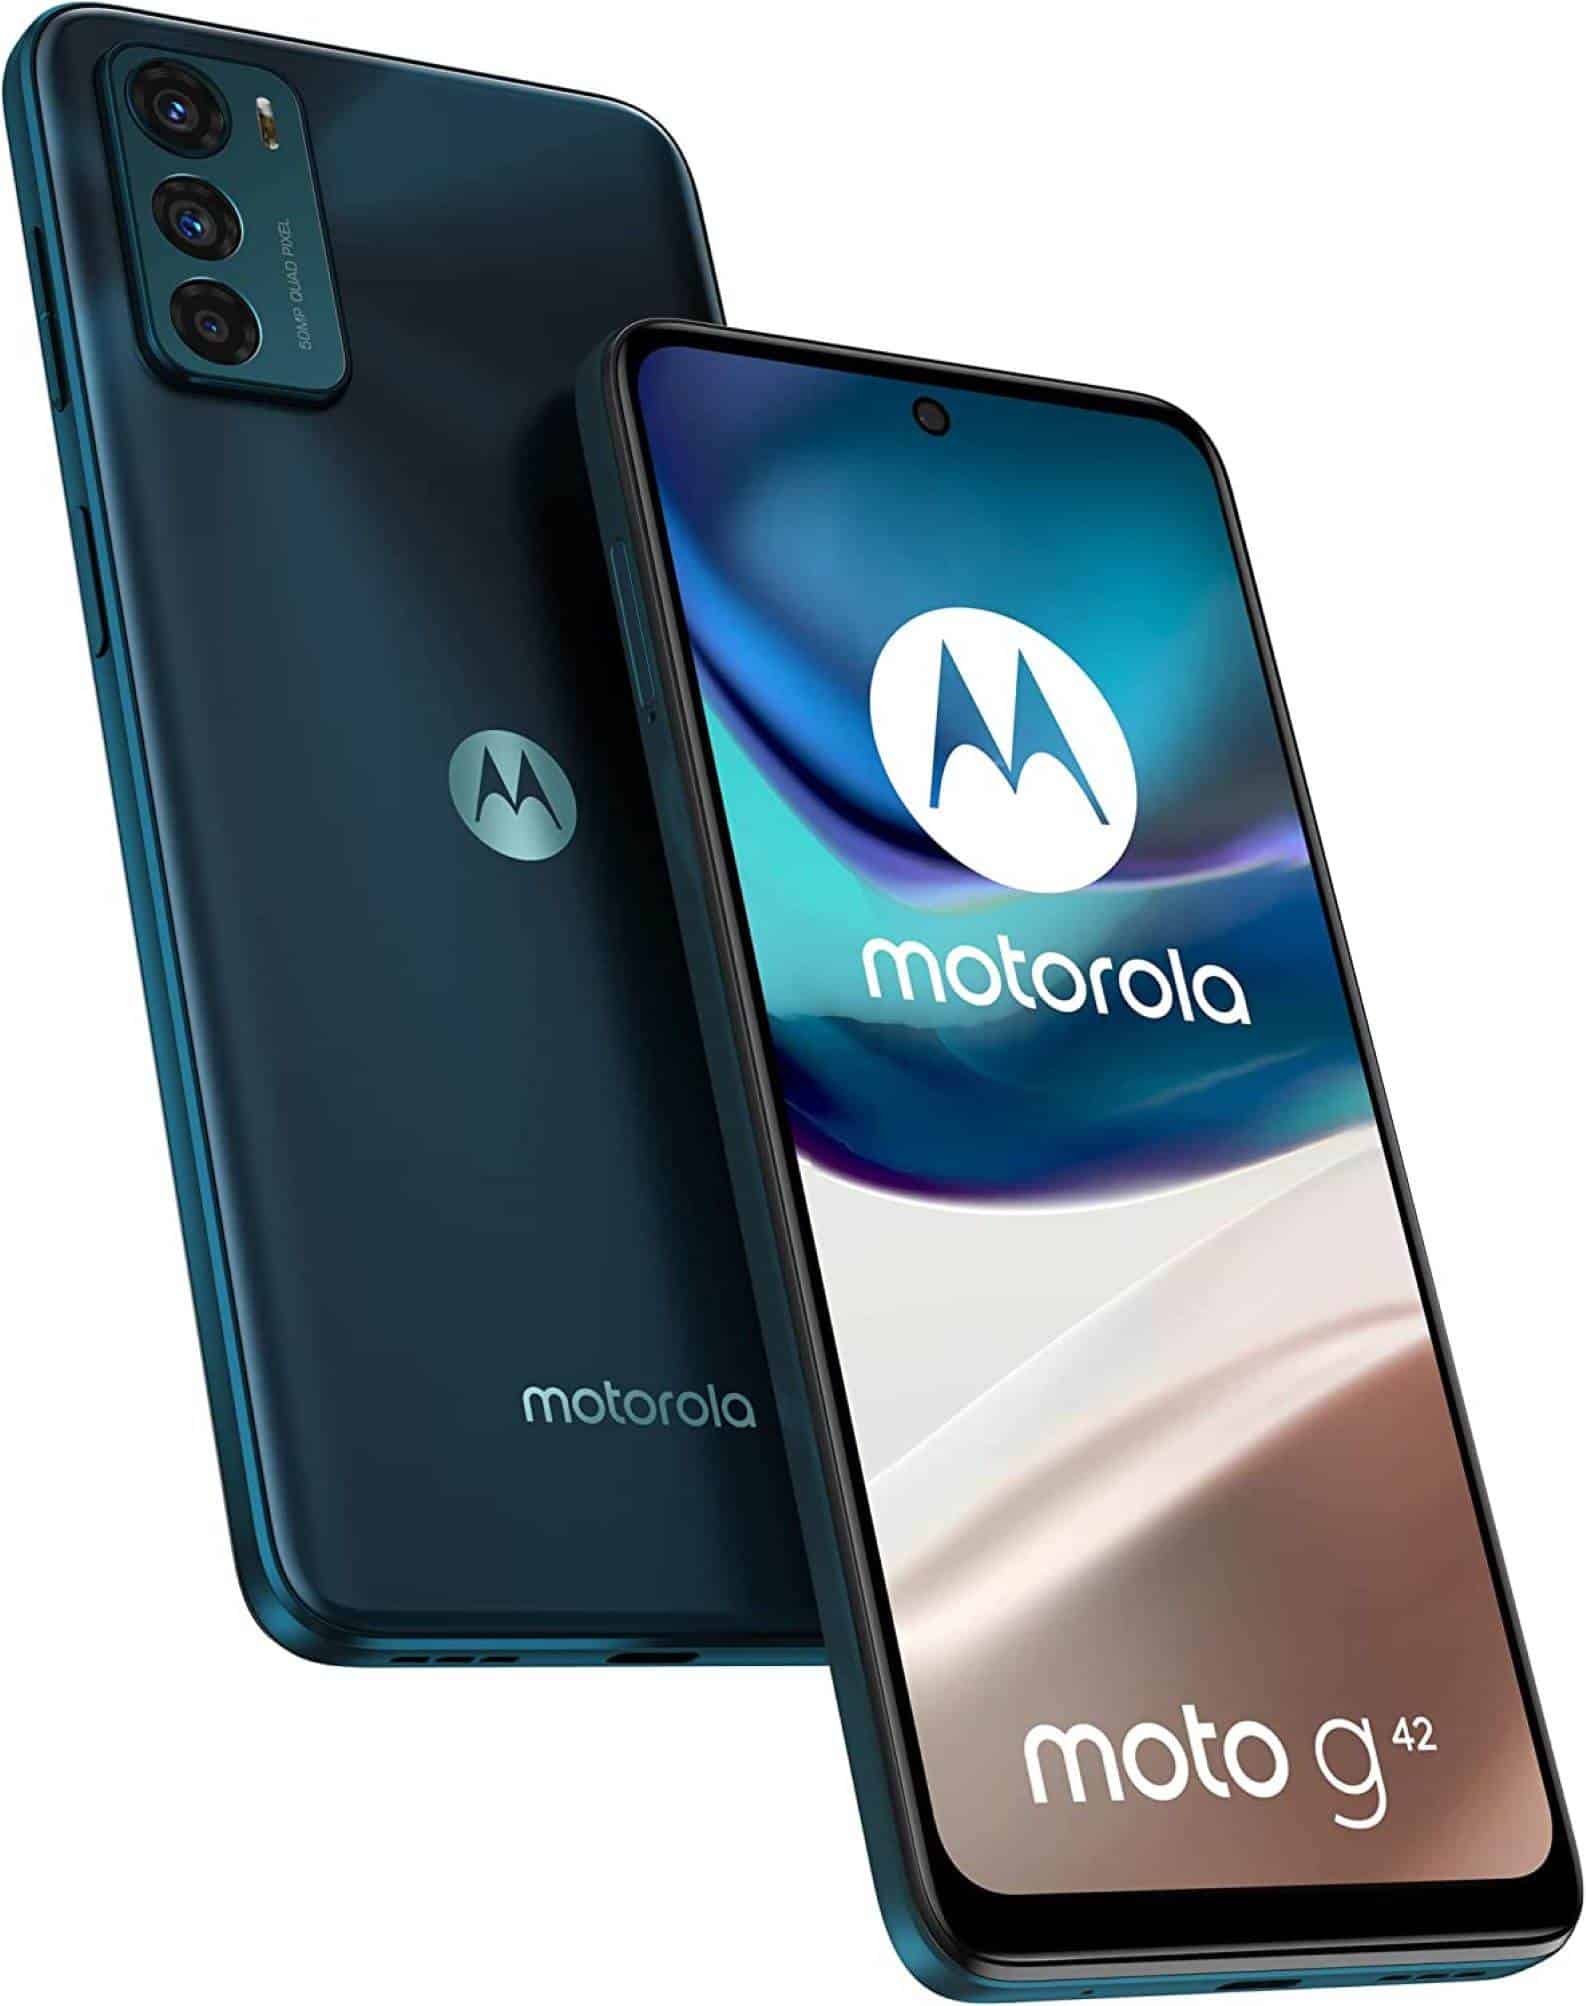 smartphone Motorola G42, gama y caracteristicas